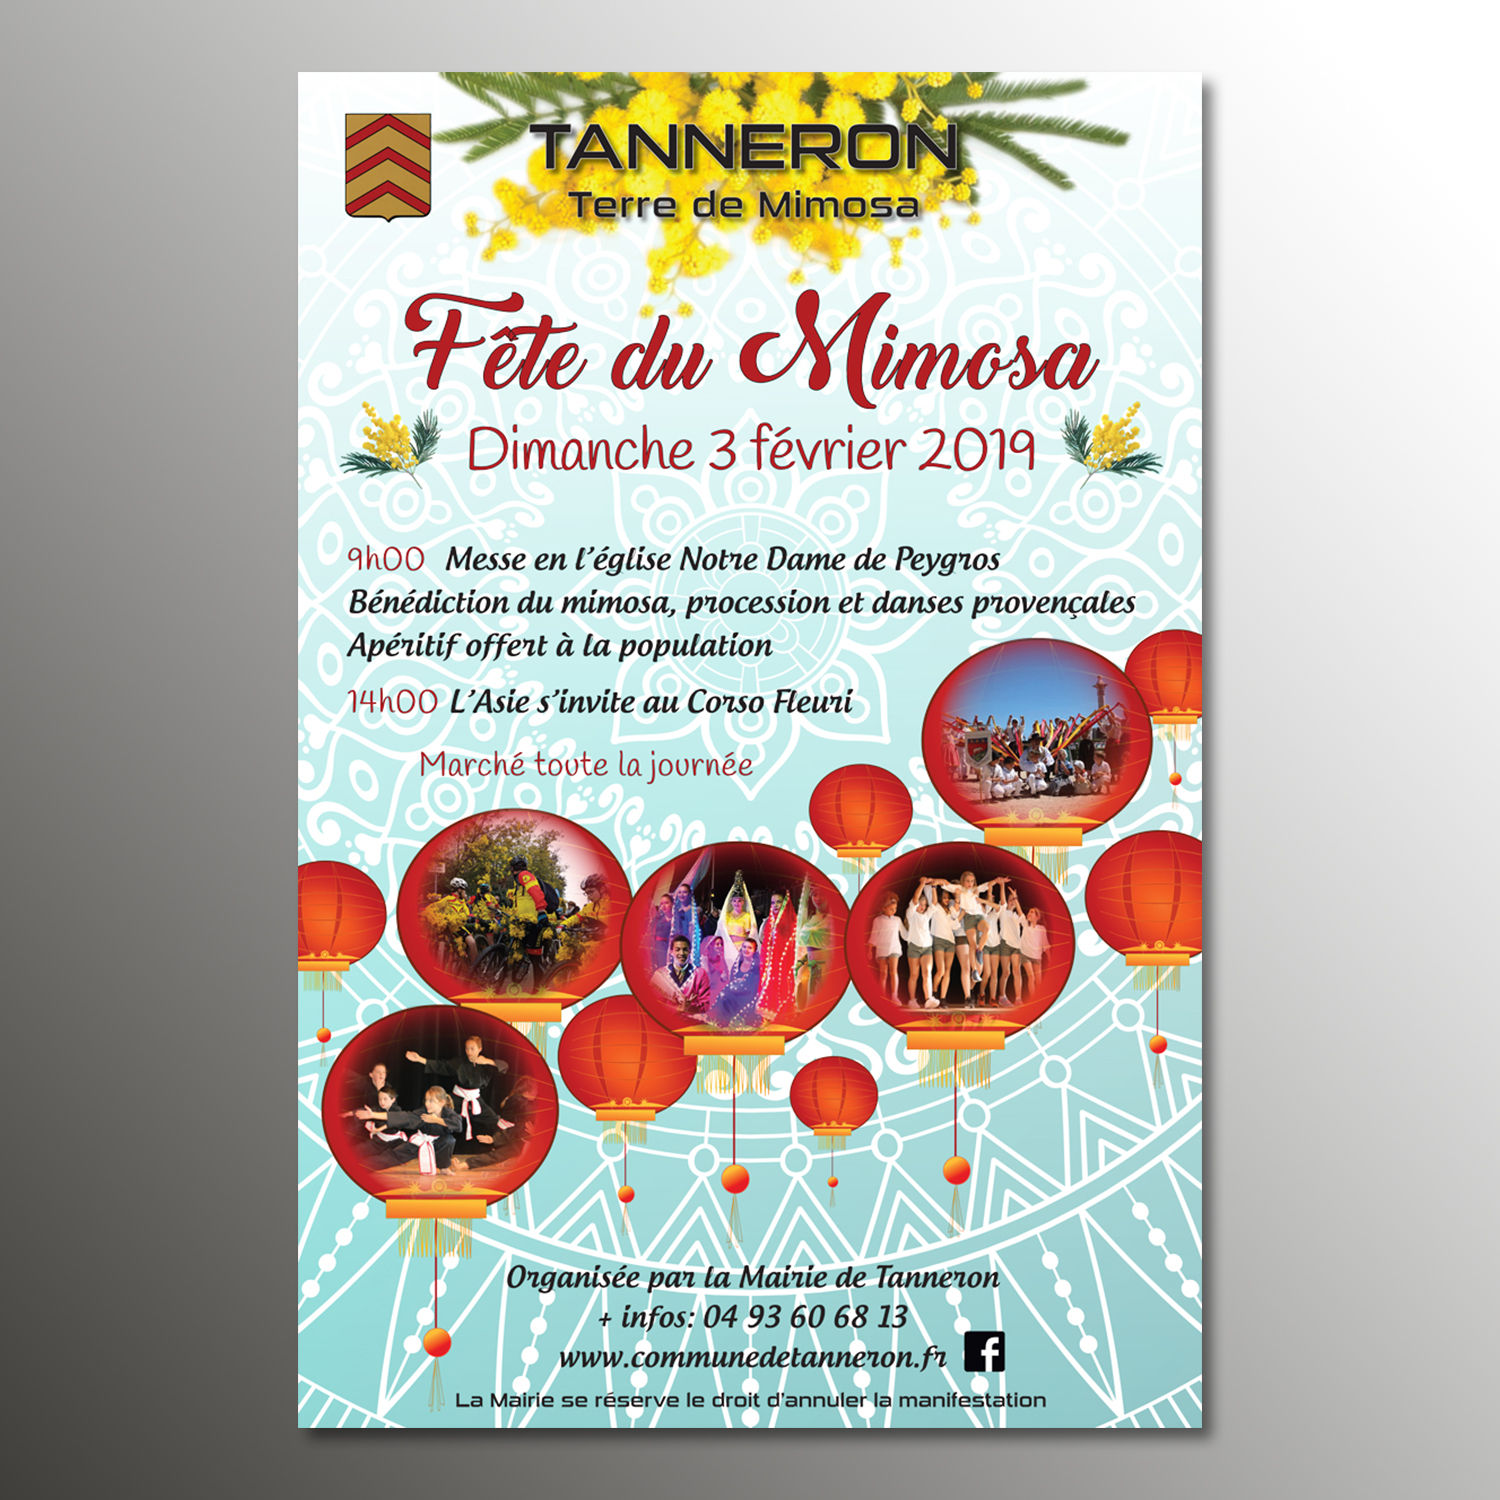 Fête du Mimosa 2019 Tanneron